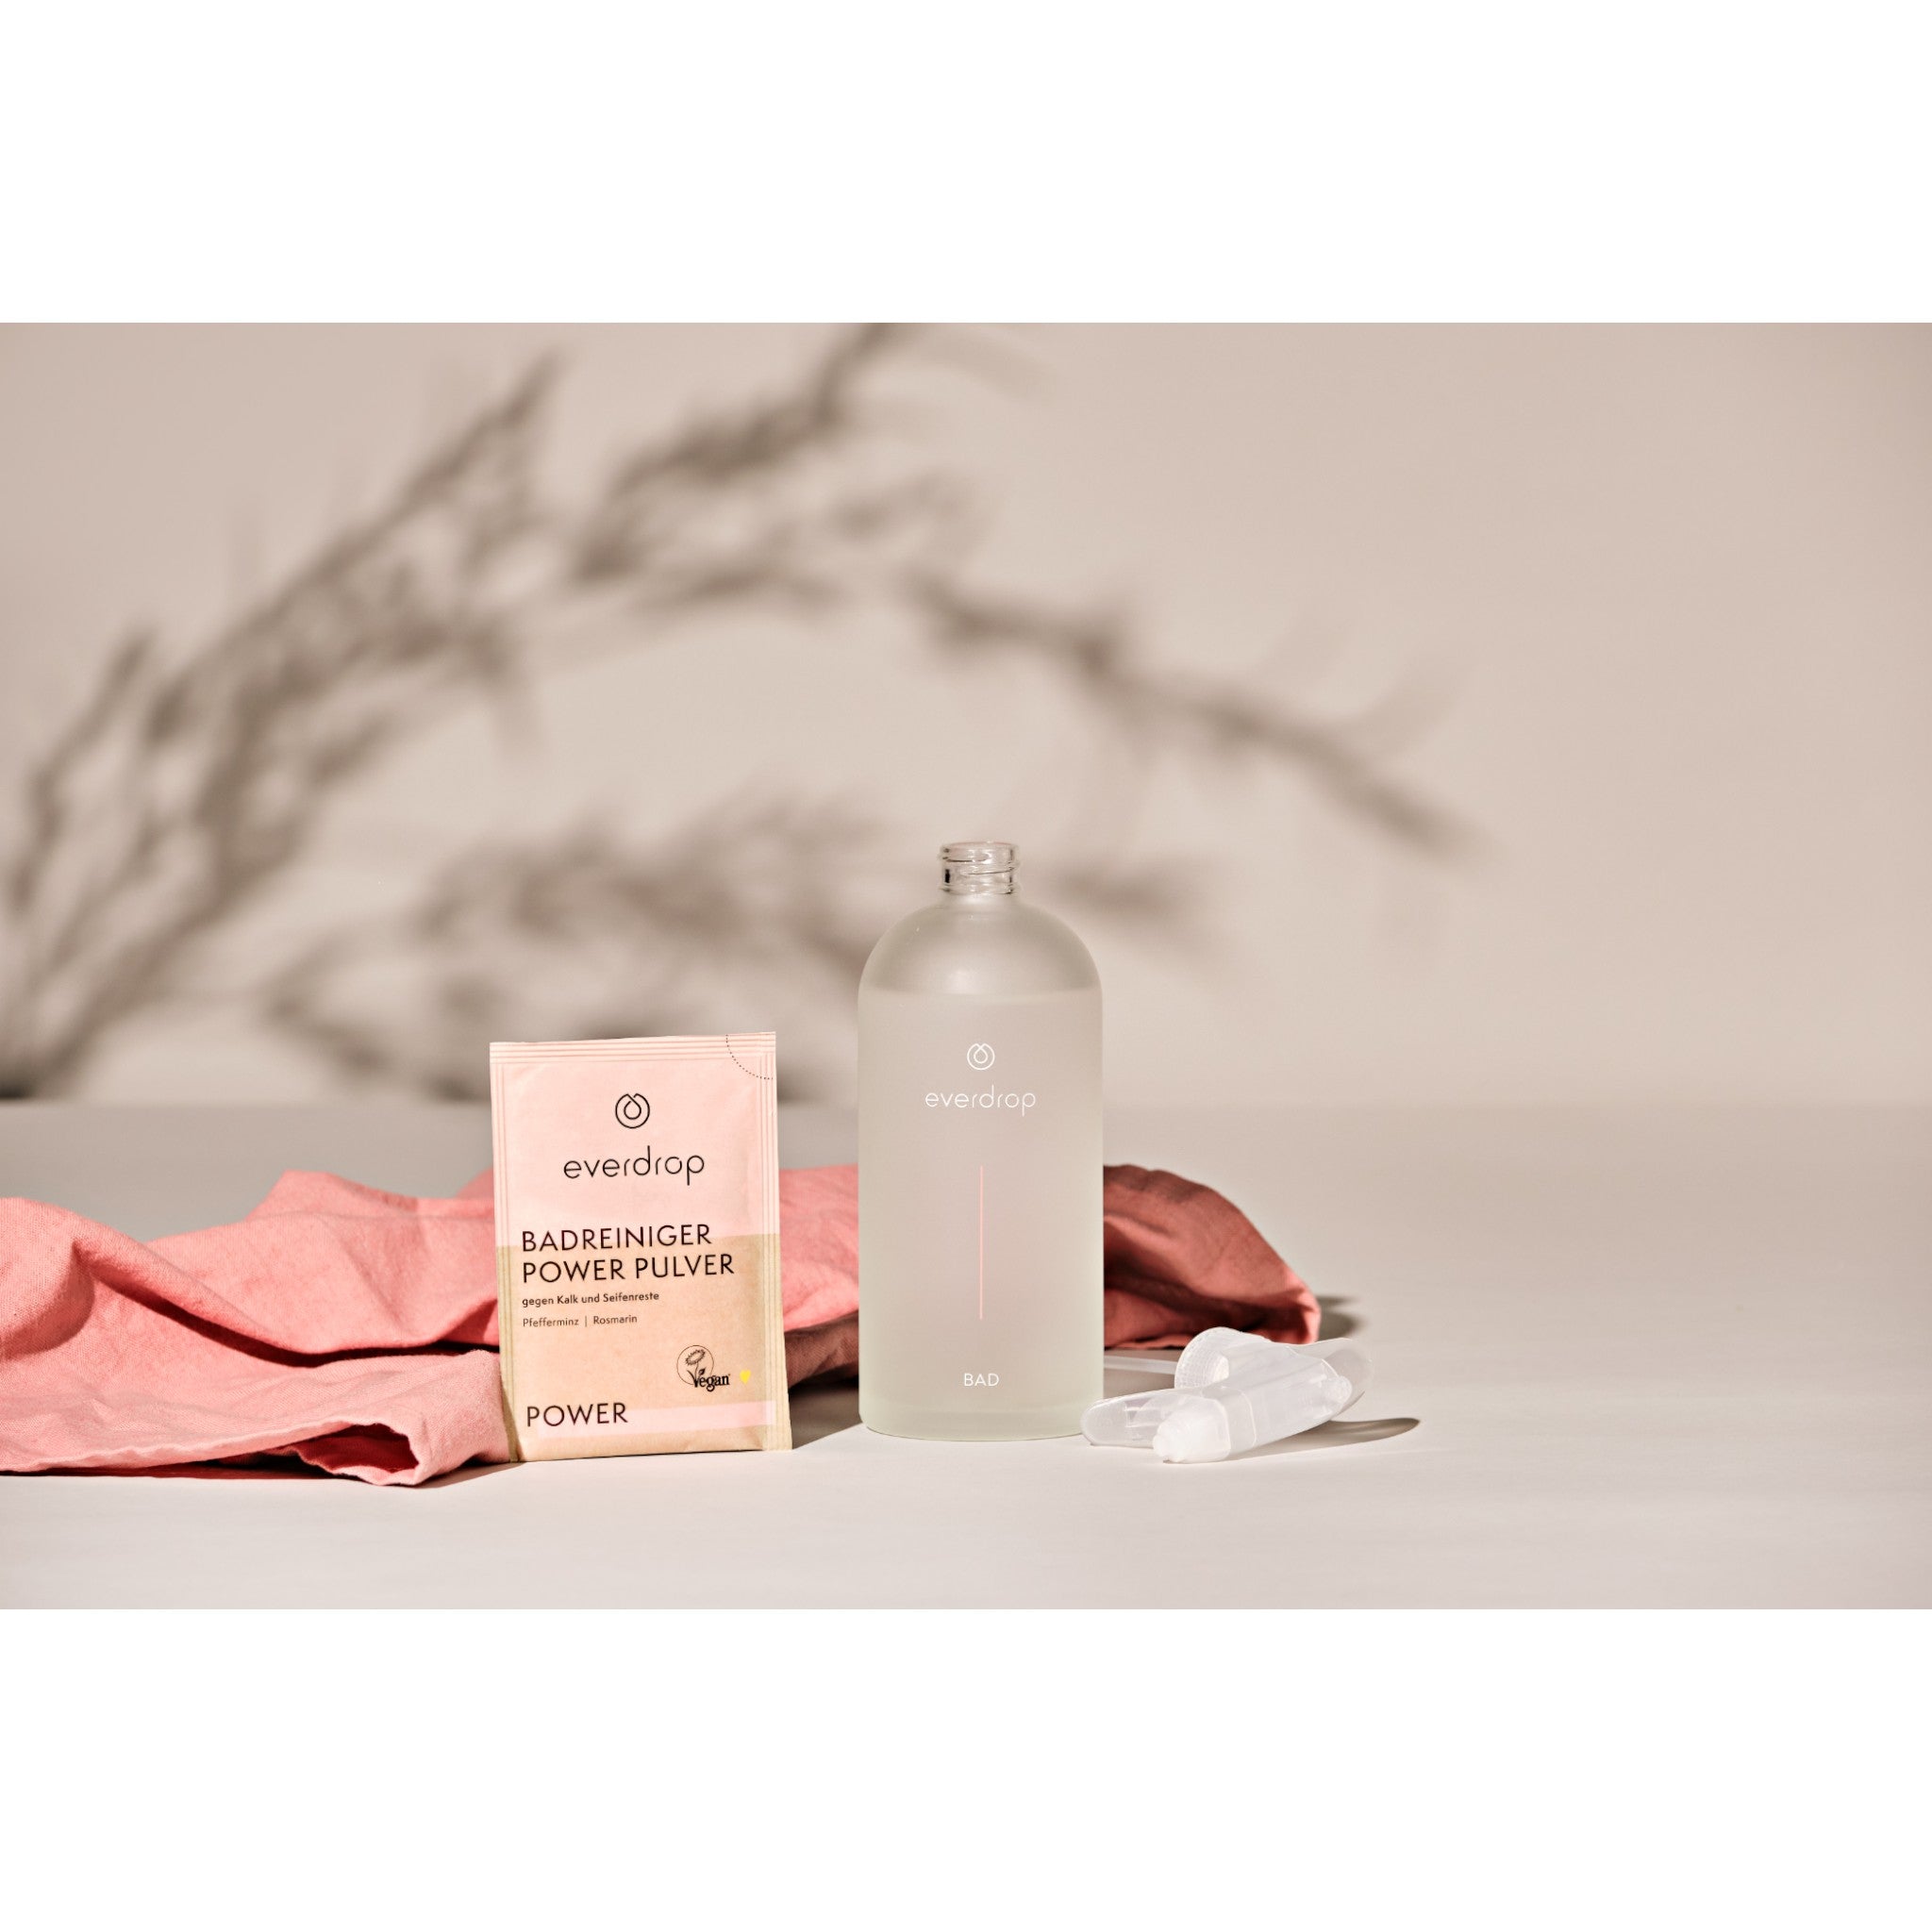 everdrop badreiniger pulver mit leerer glasflasche und rosa tuch abgebildet